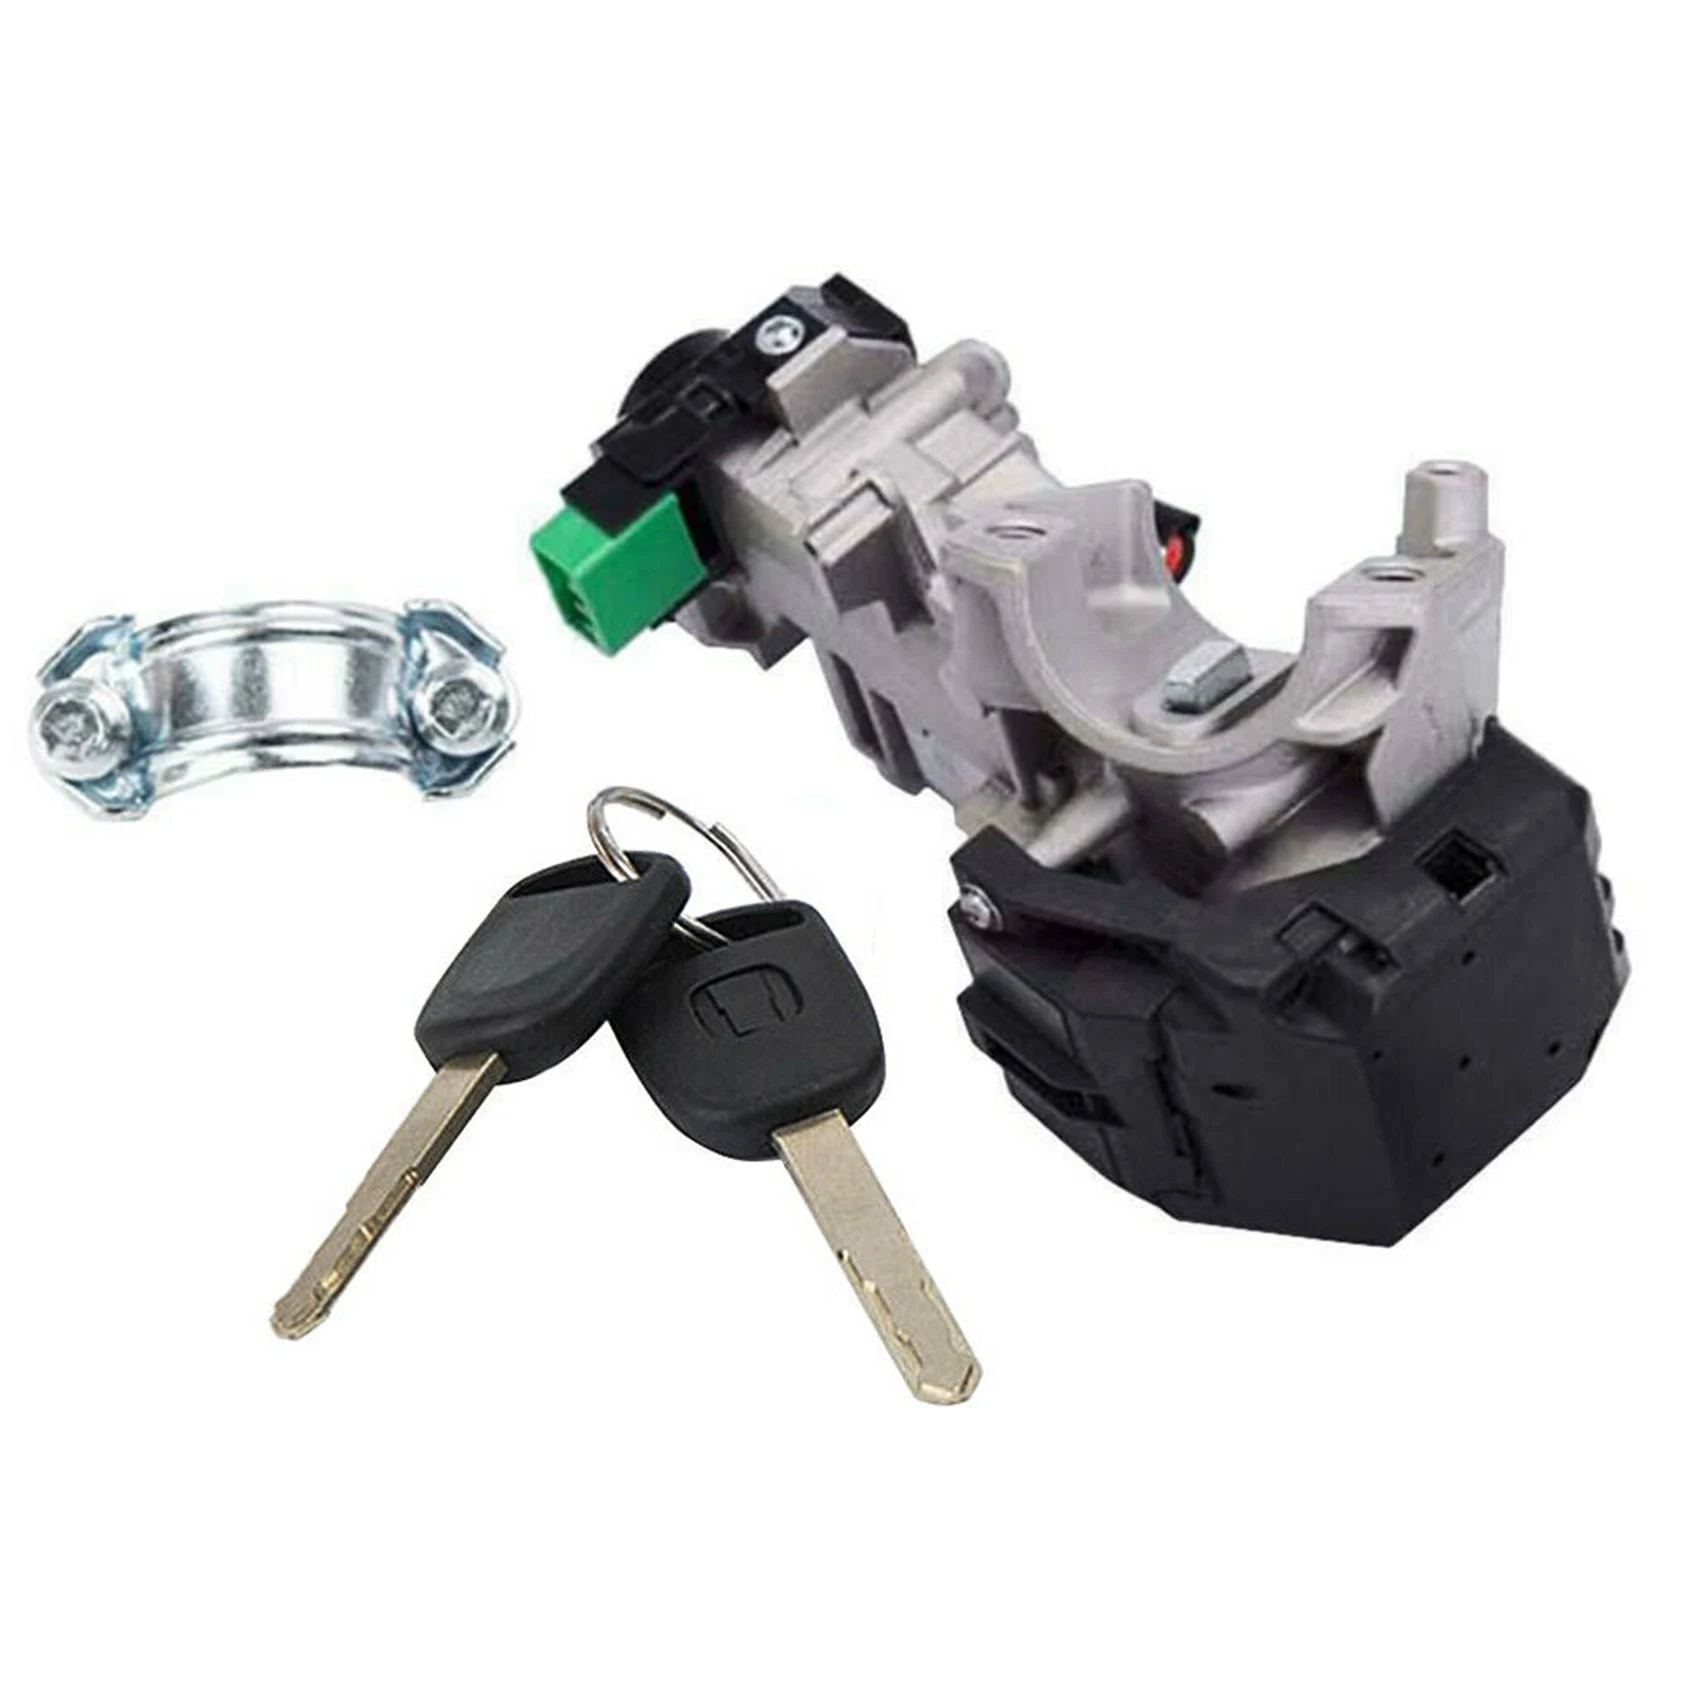 

Выключатель зажигания Блокировка цилиндра авто Trans + 2 ключа для 03-11 Honda Accord CRV Fit Civic Odyssey 35100-SDA-A71